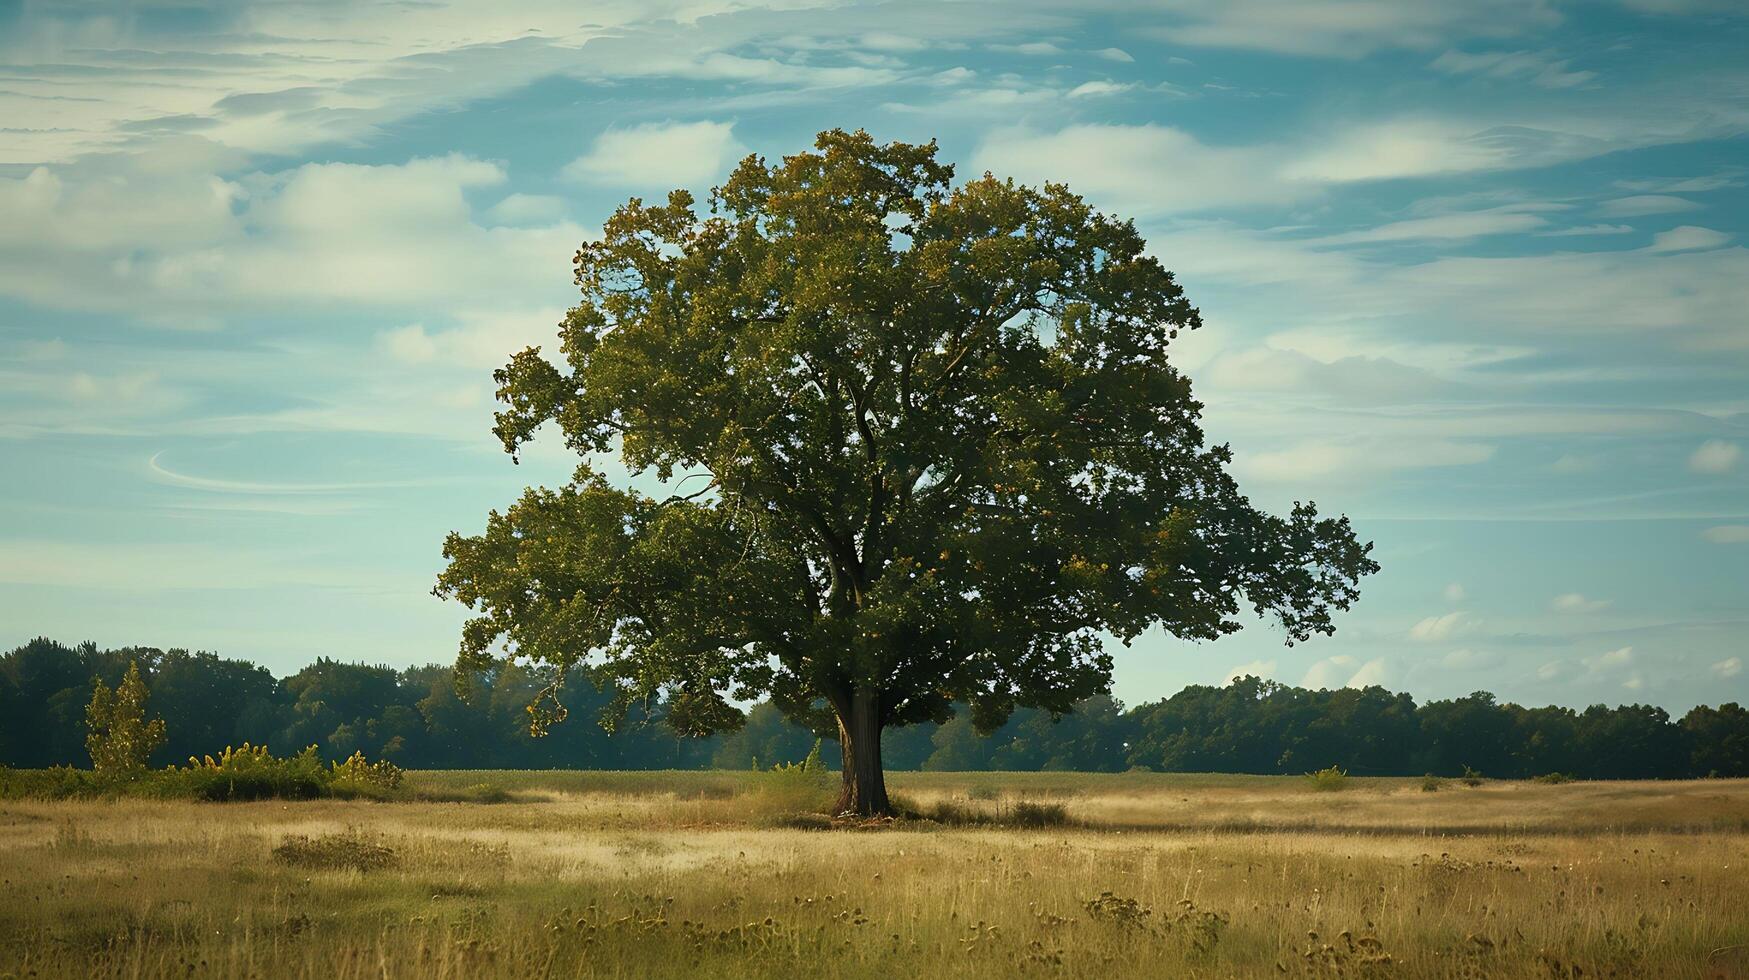 Lonely green oak tree in the field photo